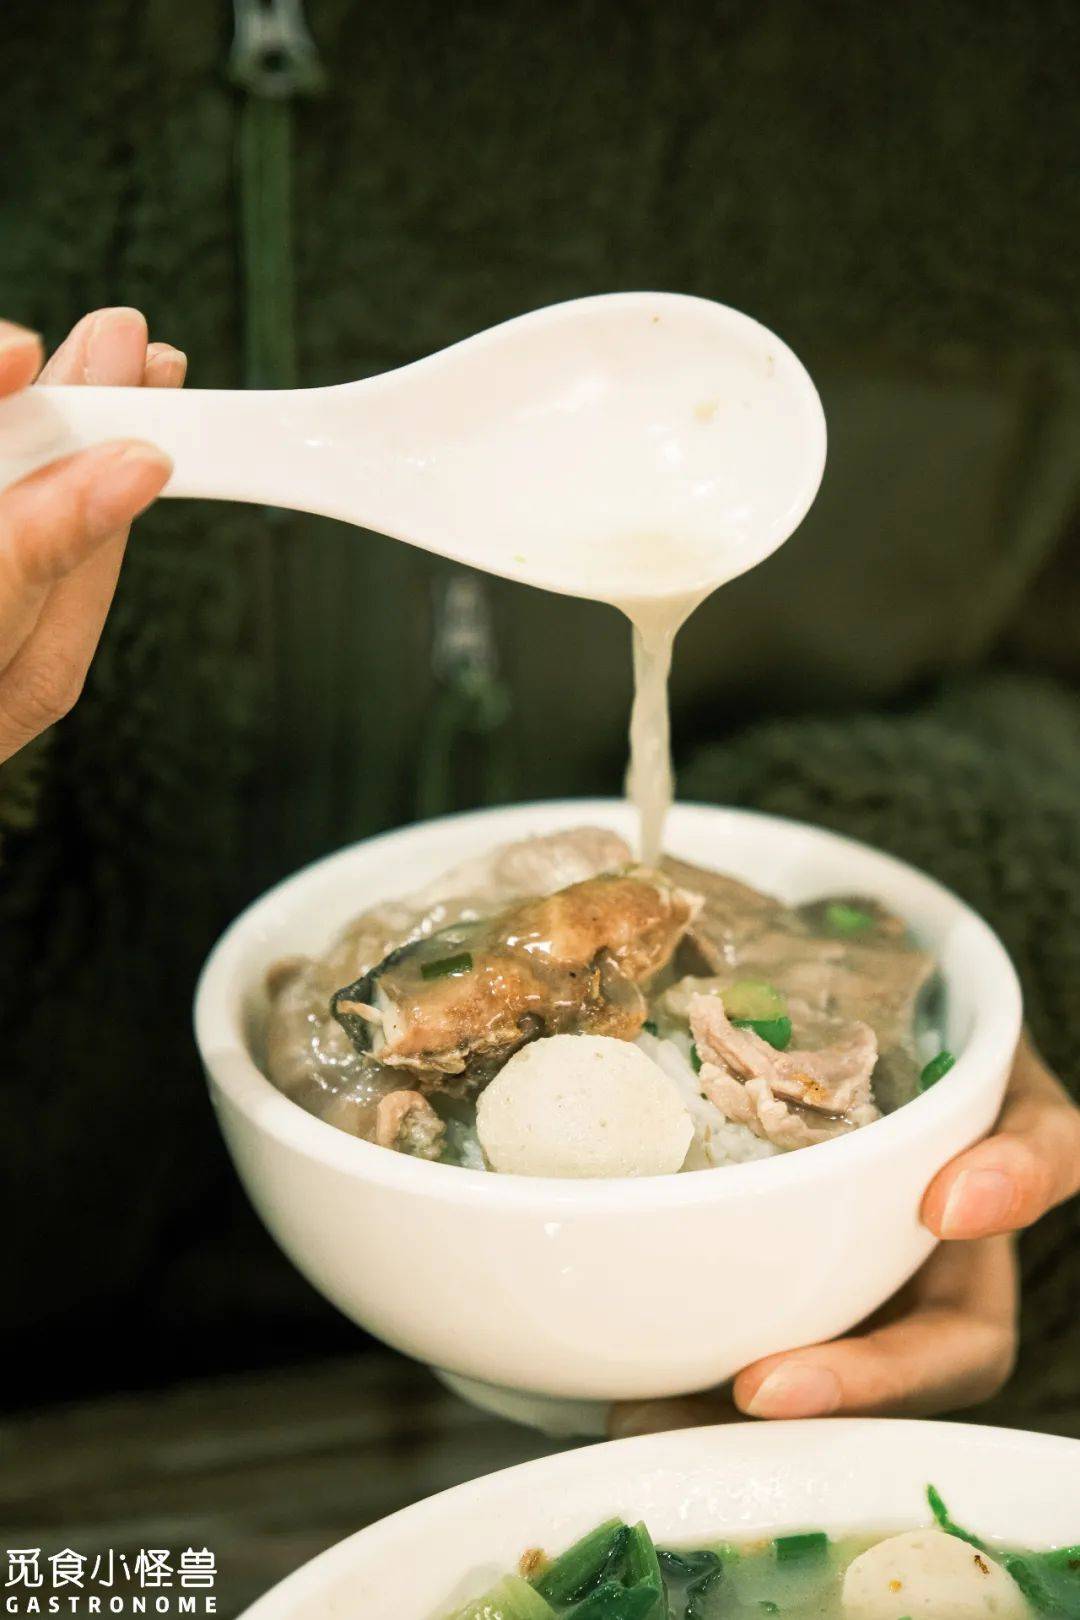 喝一口鲜味的鱼头汤是对这碗面最基本的尊重,即补脑又补钙,早餐来一碗